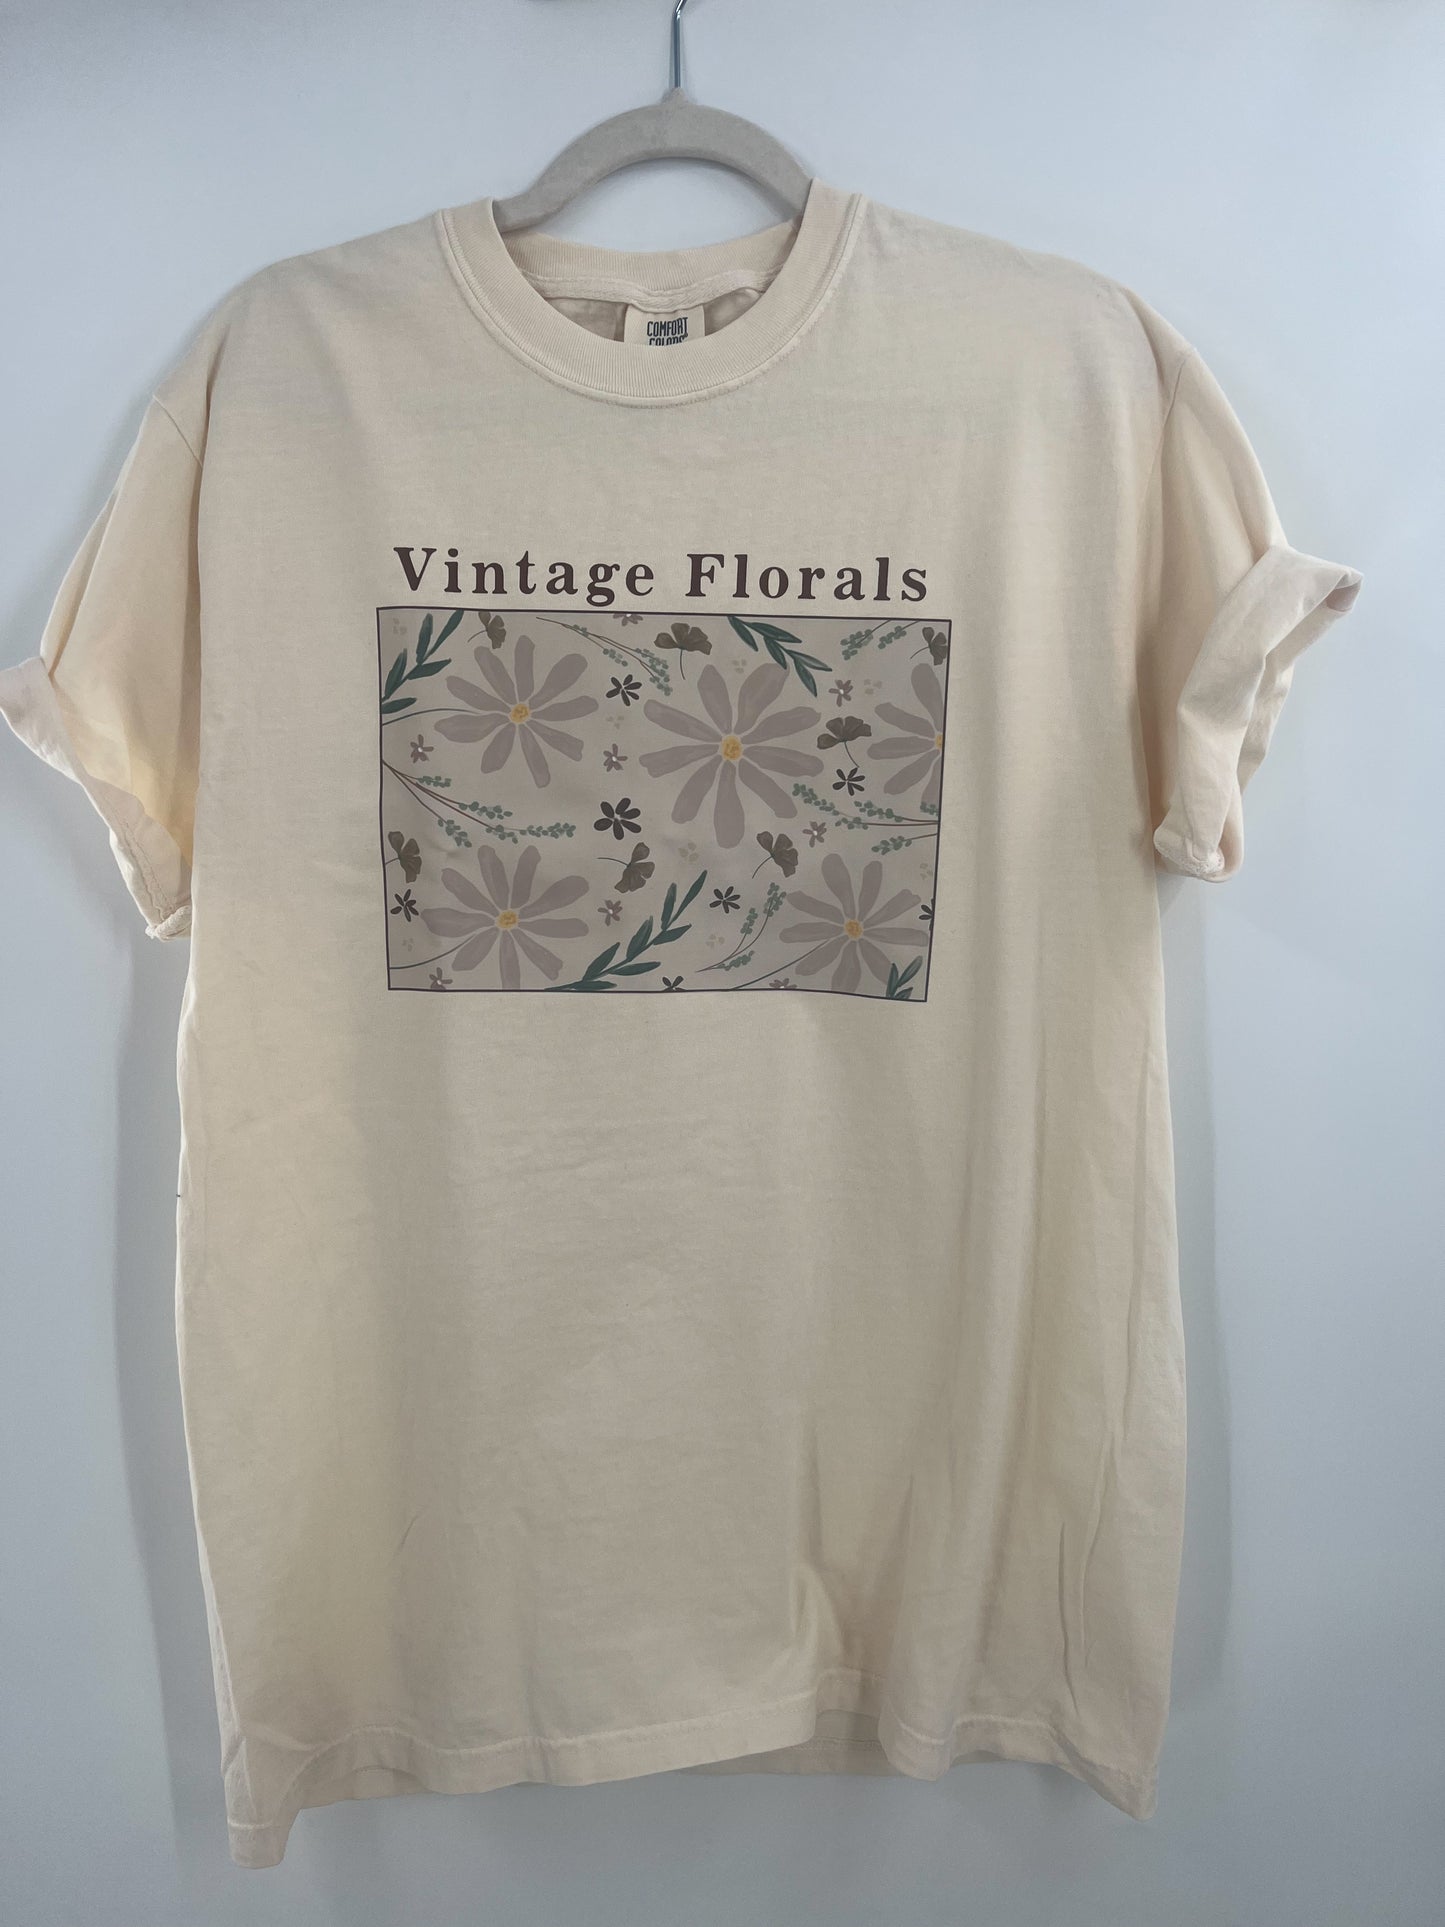 Vintage Florals Tee